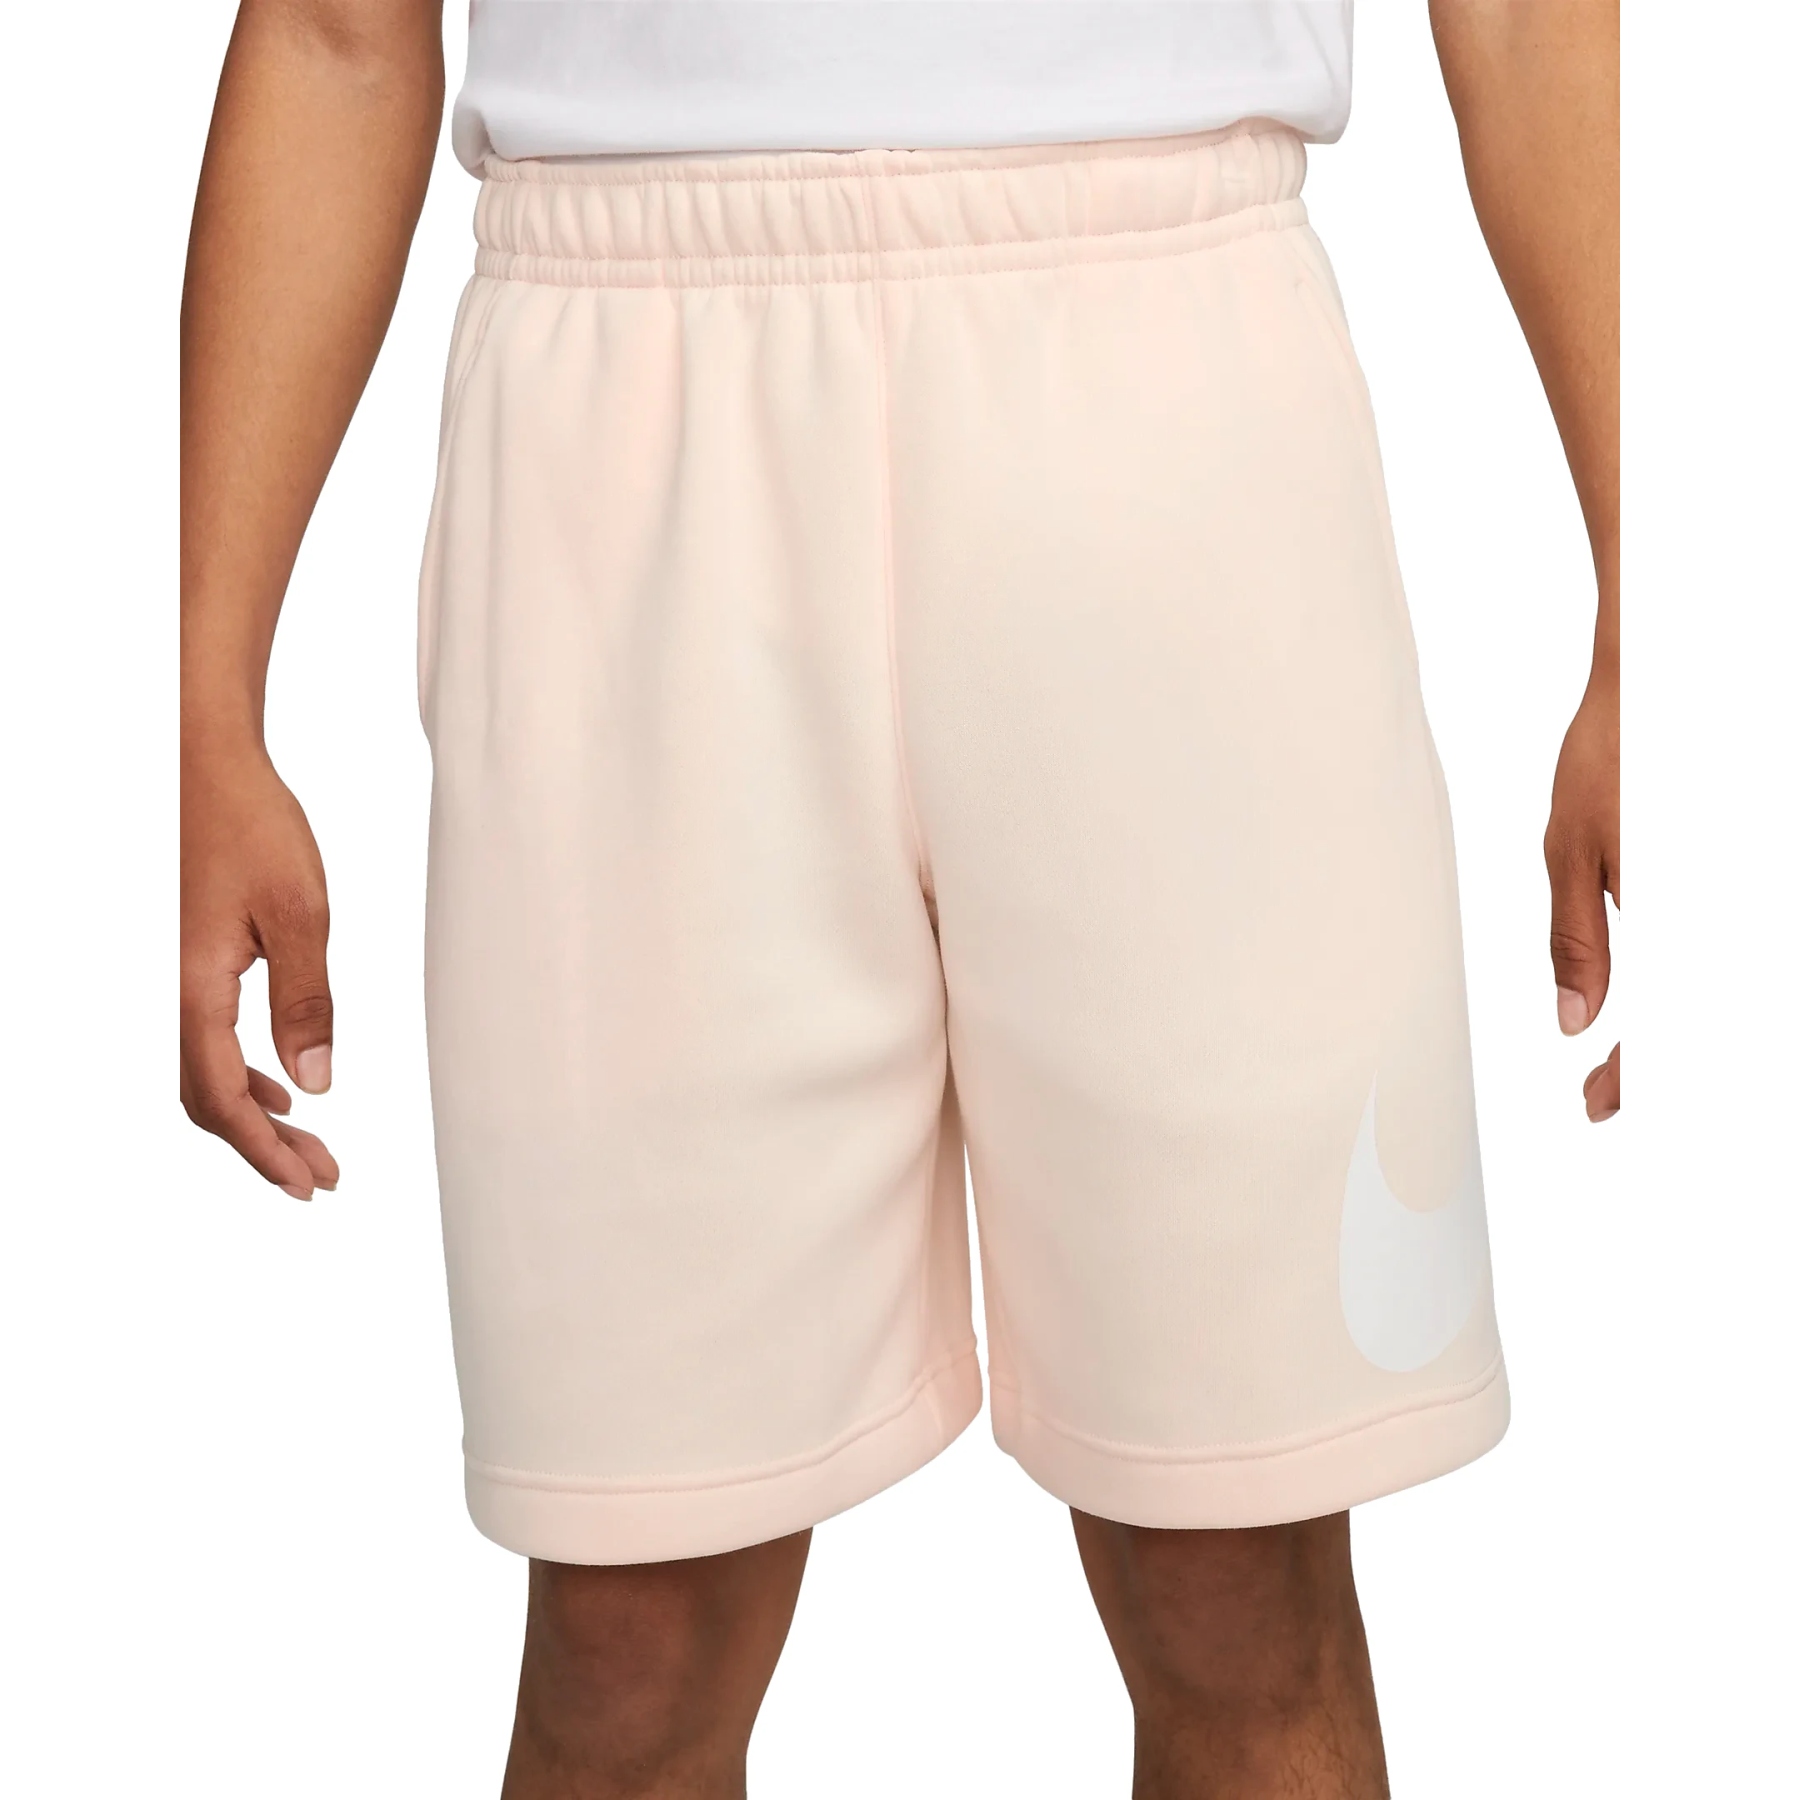 Produktbild von Nike Sportswear Club Graphic Shorts Herren - guava ice/white/white BV2721-838